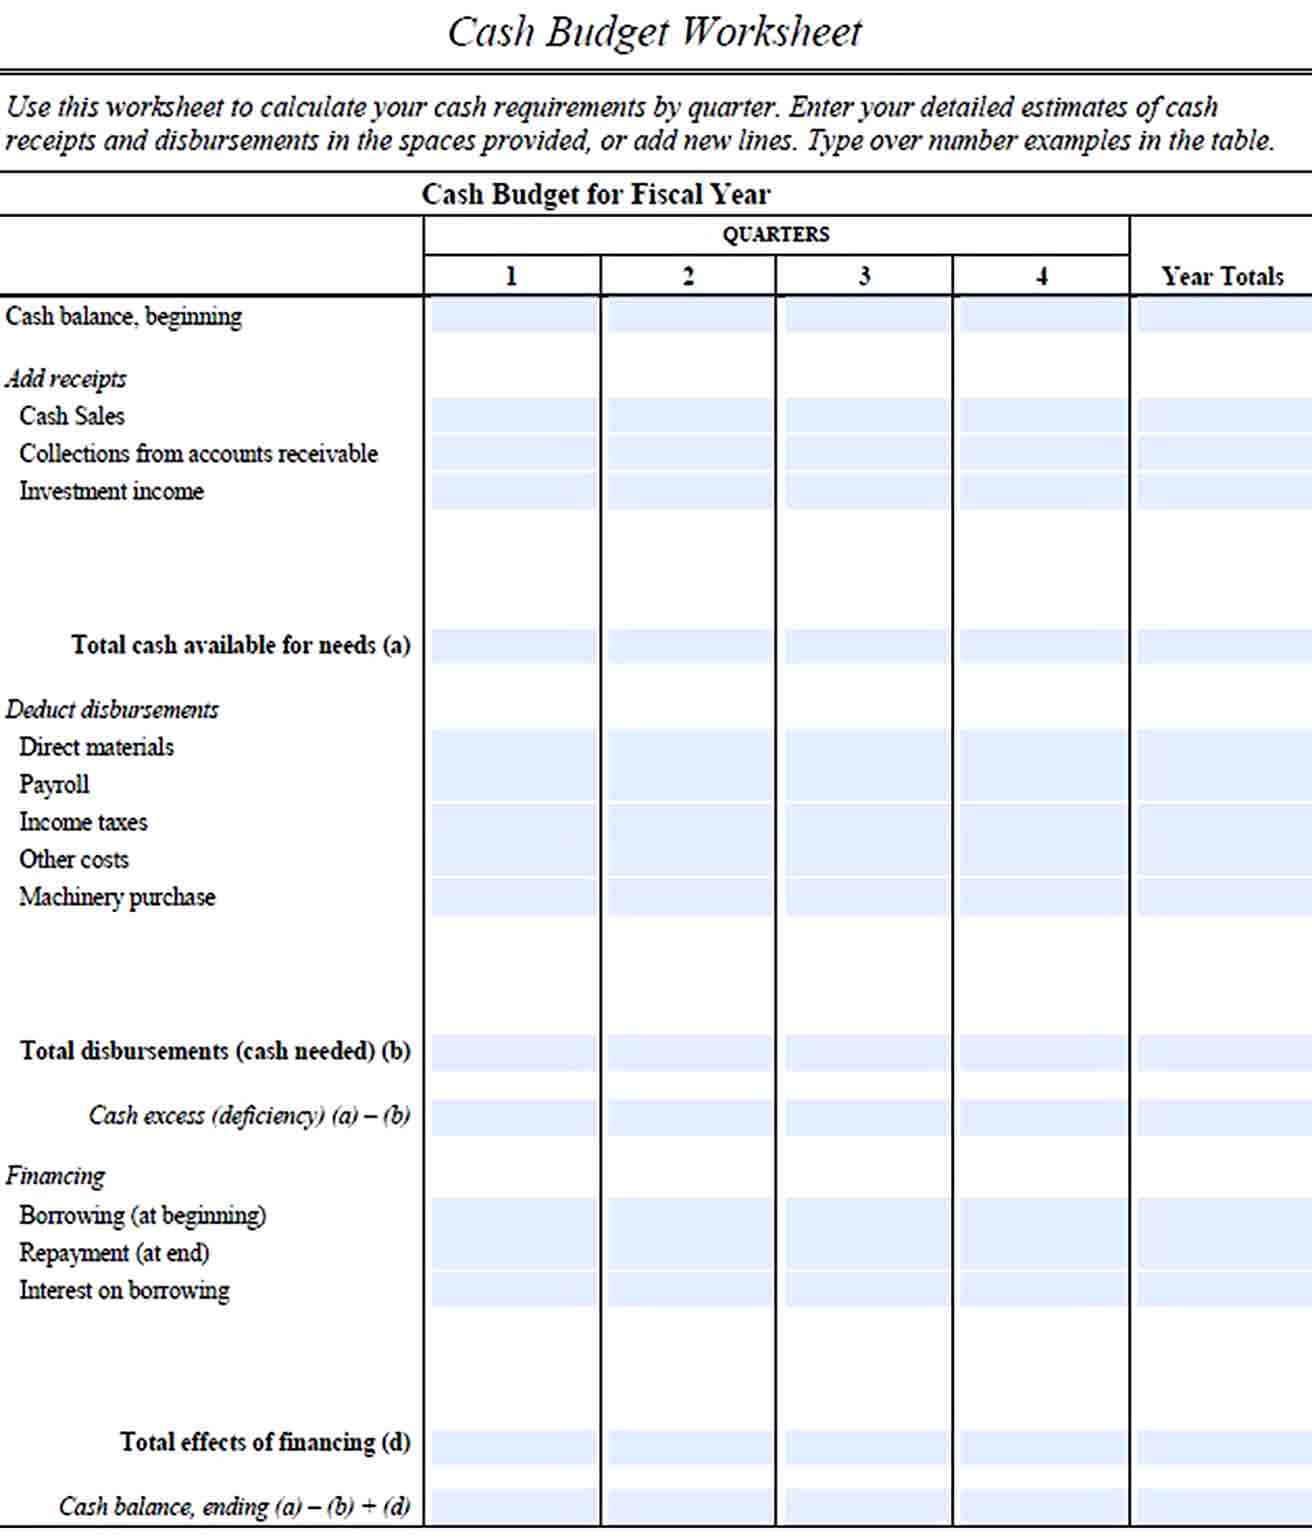 Cash Budget Worksheet